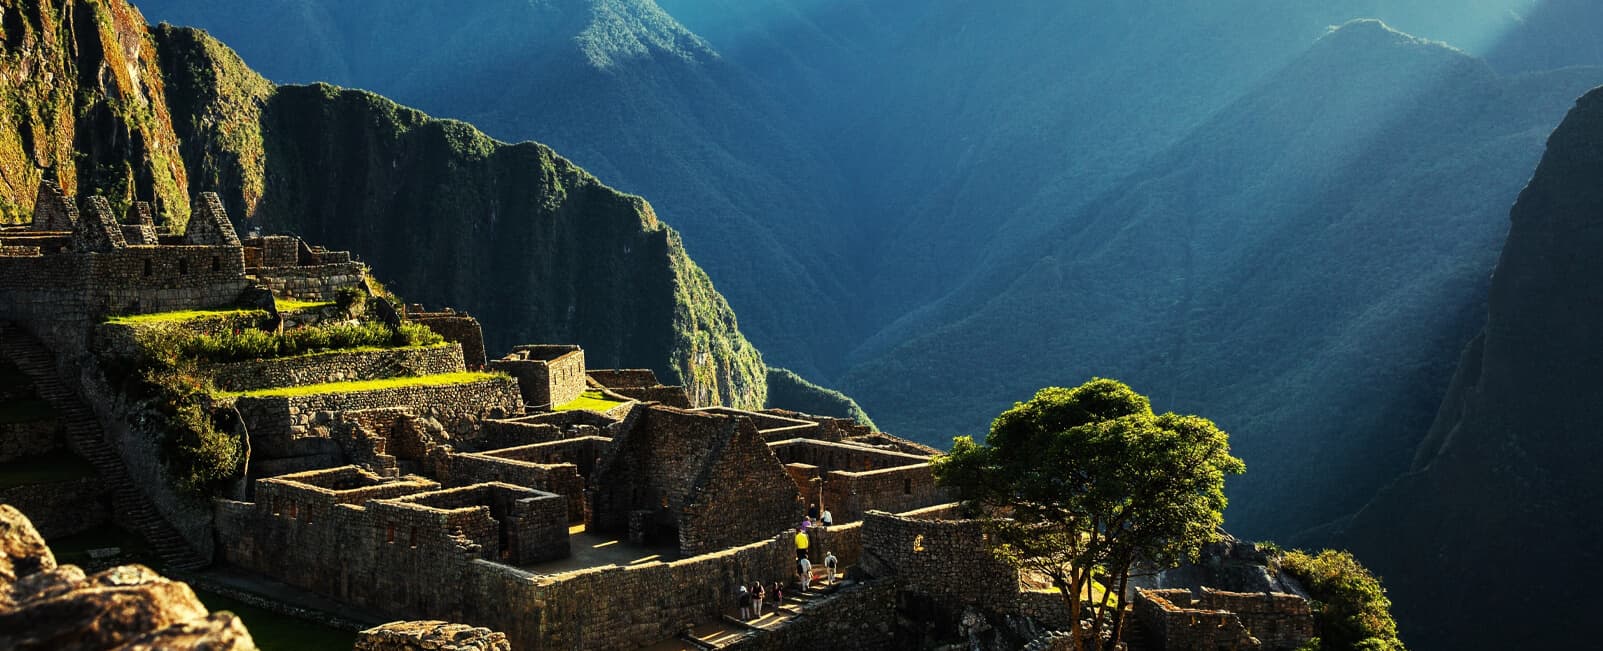 Ruinas antiguas de Machu Picchu en Perú